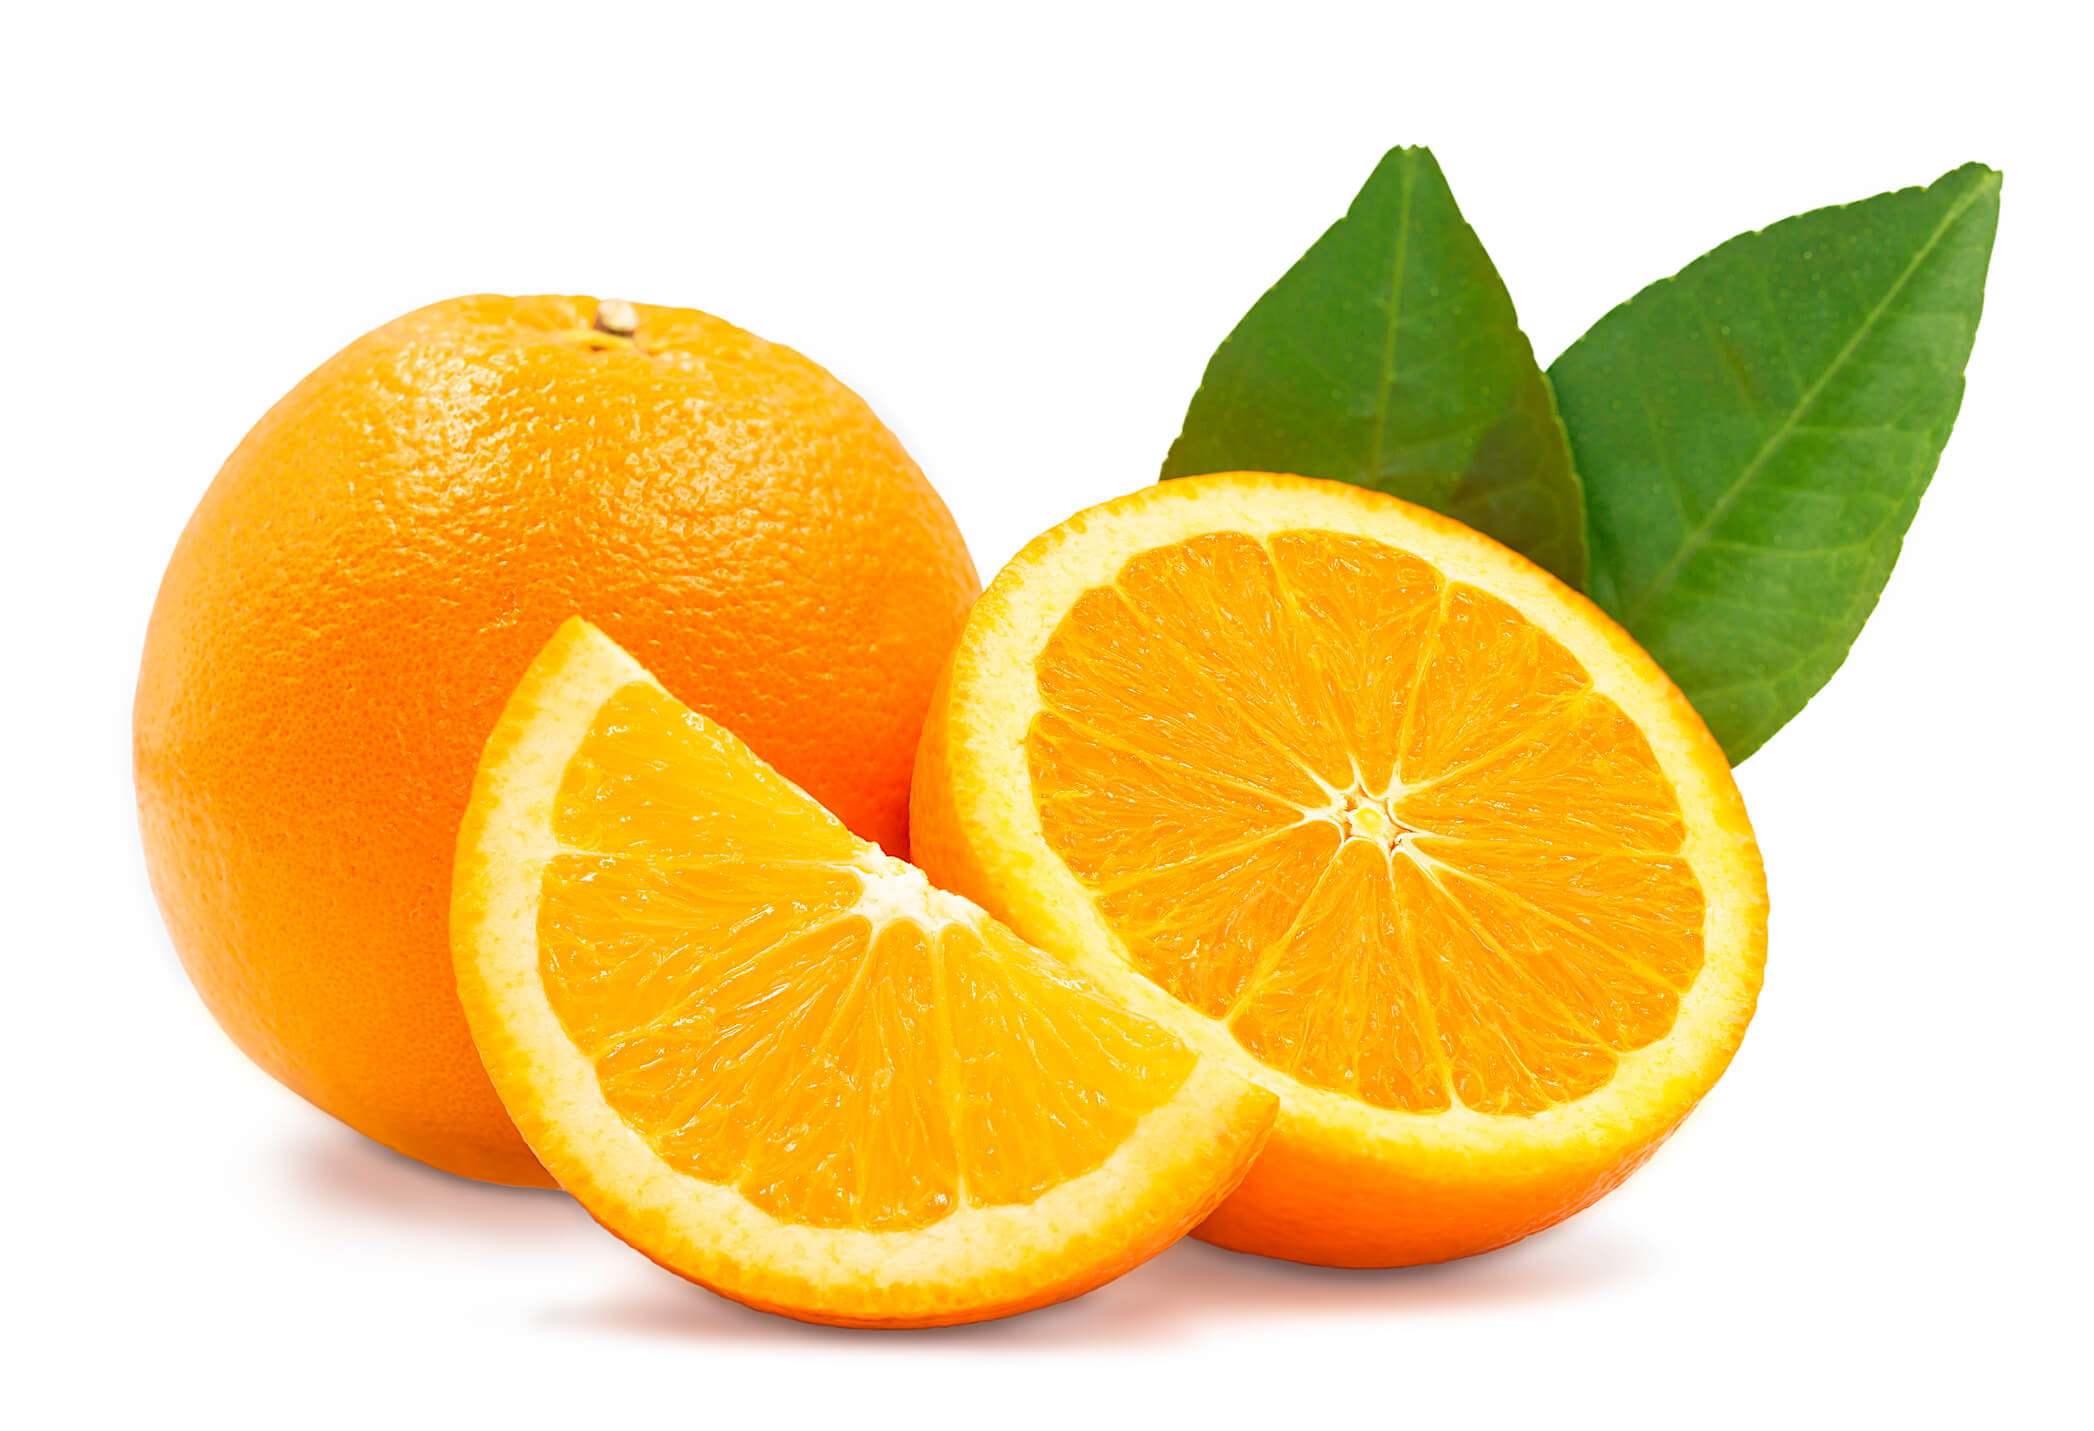 One orange slice, one full orange, and one half orange set against a white background